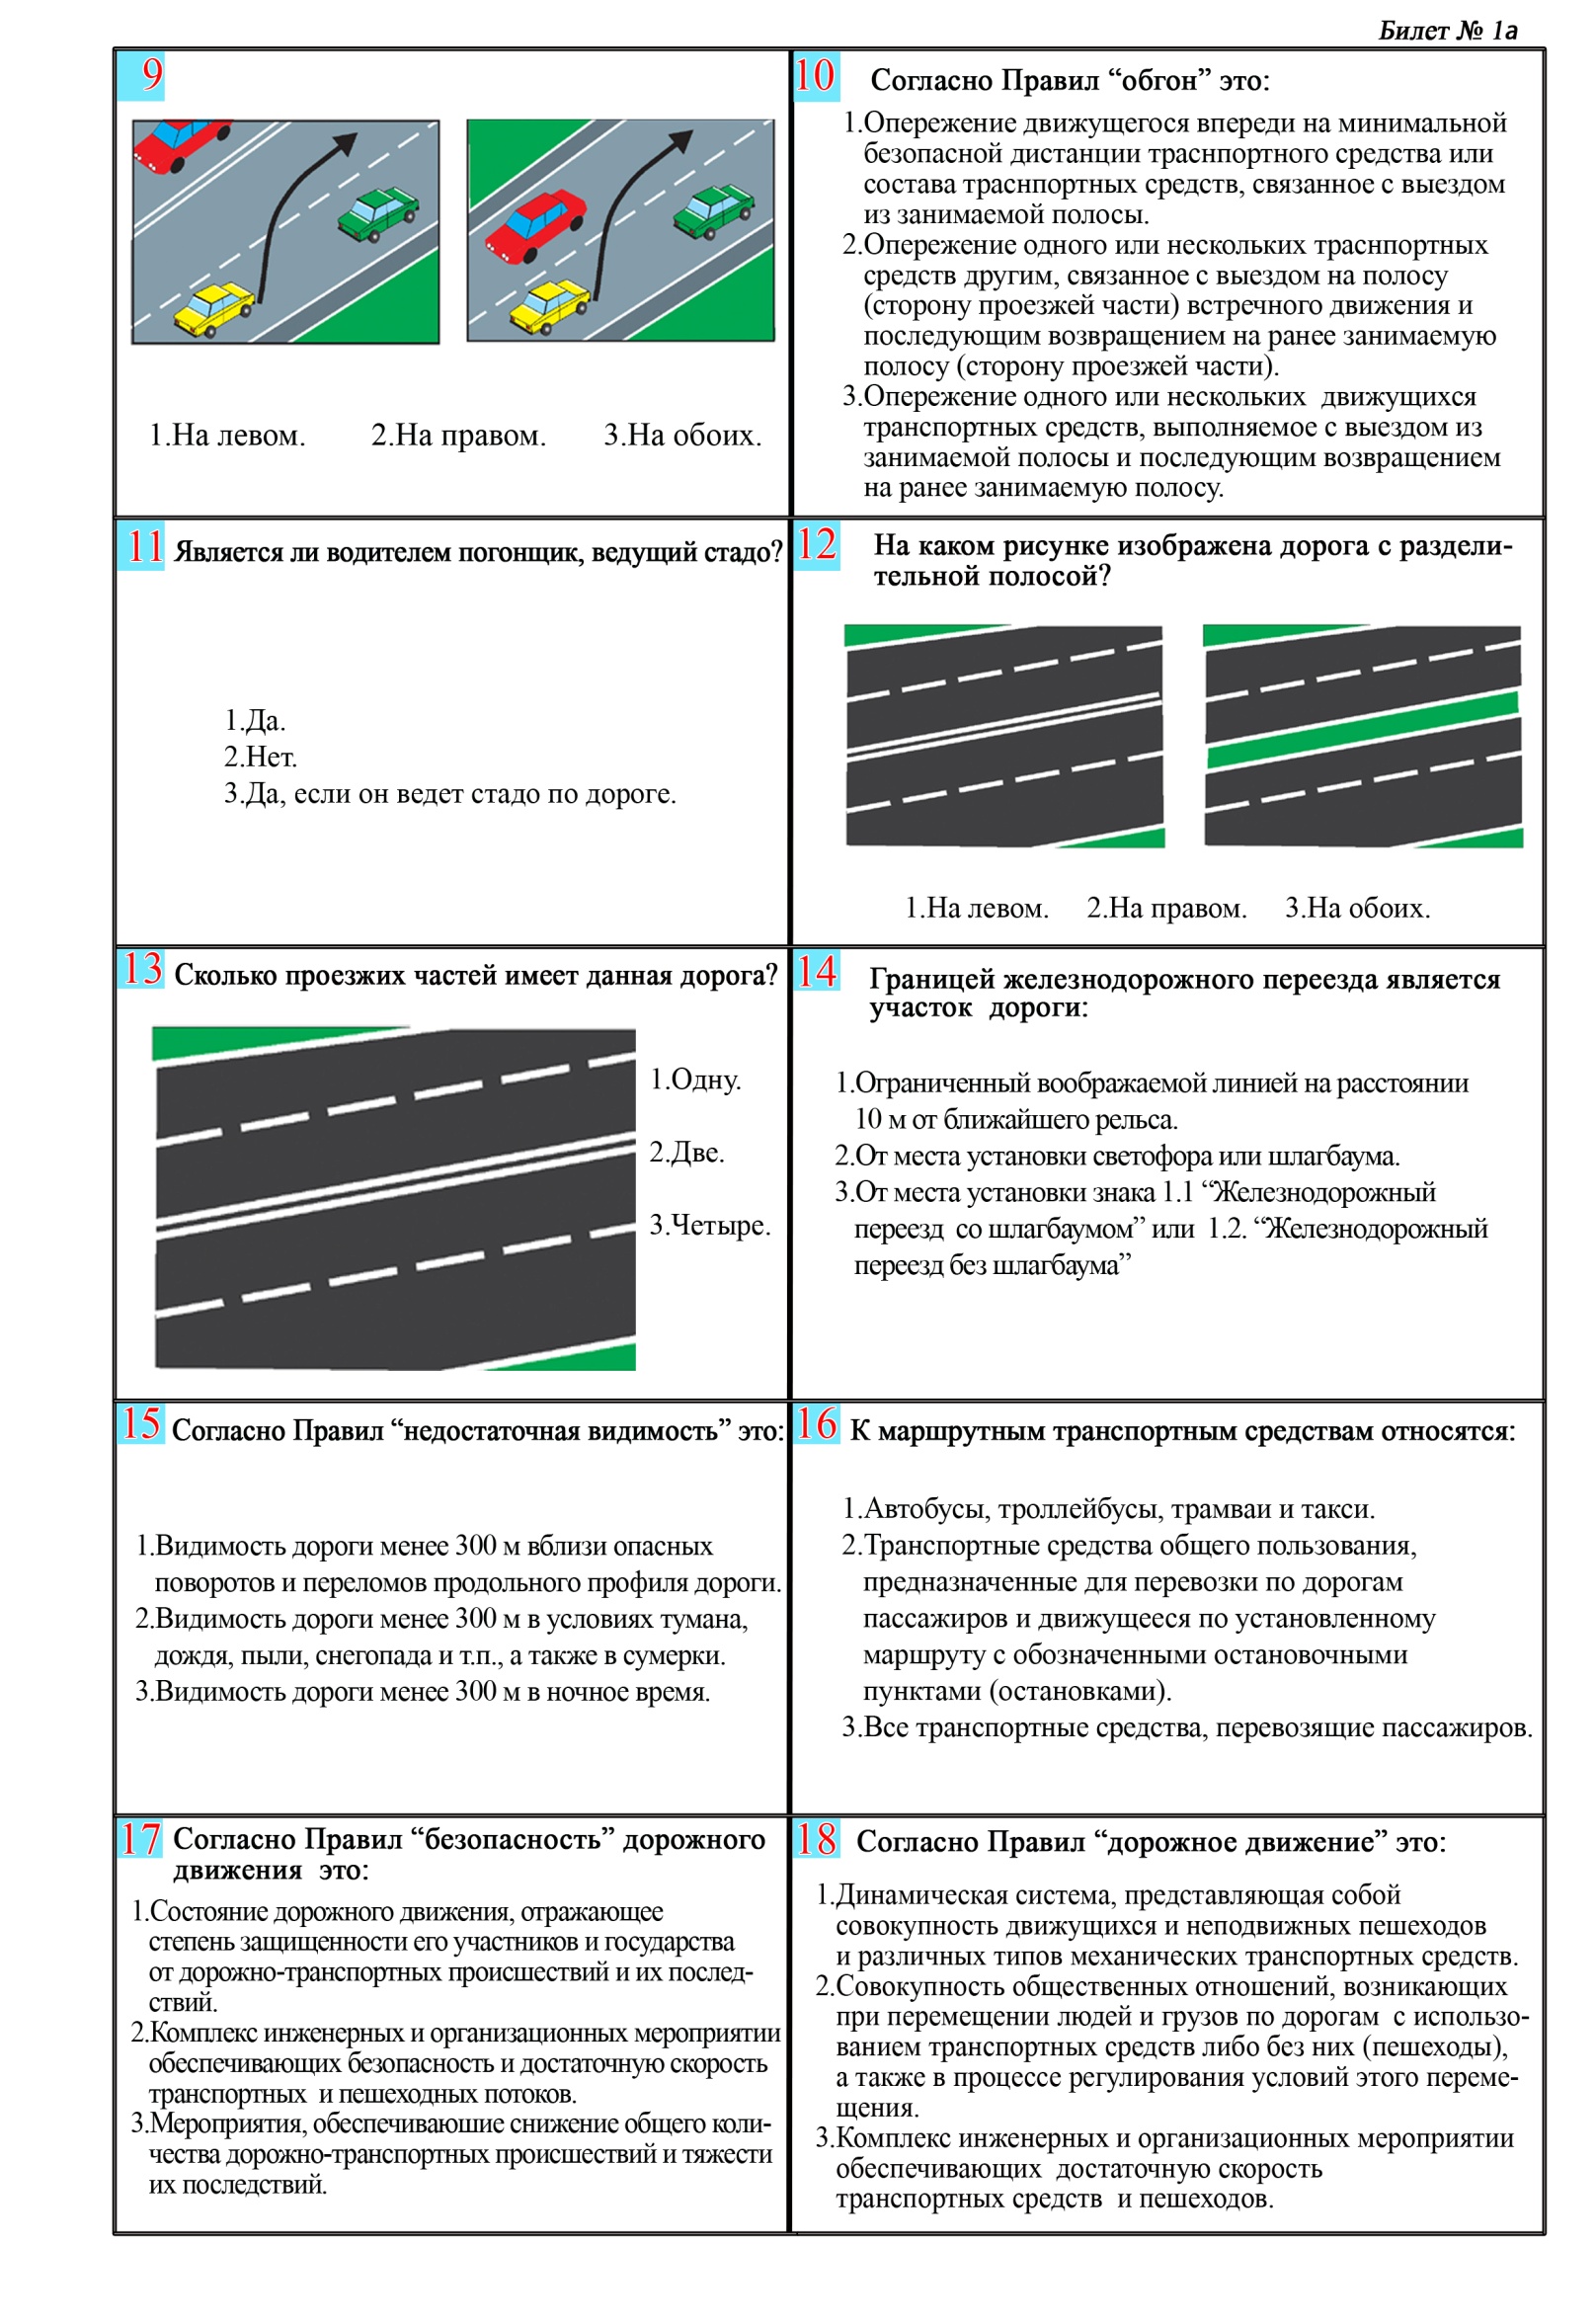 Сборник тематических тестовых заданий по Правилам дорожного движения РК